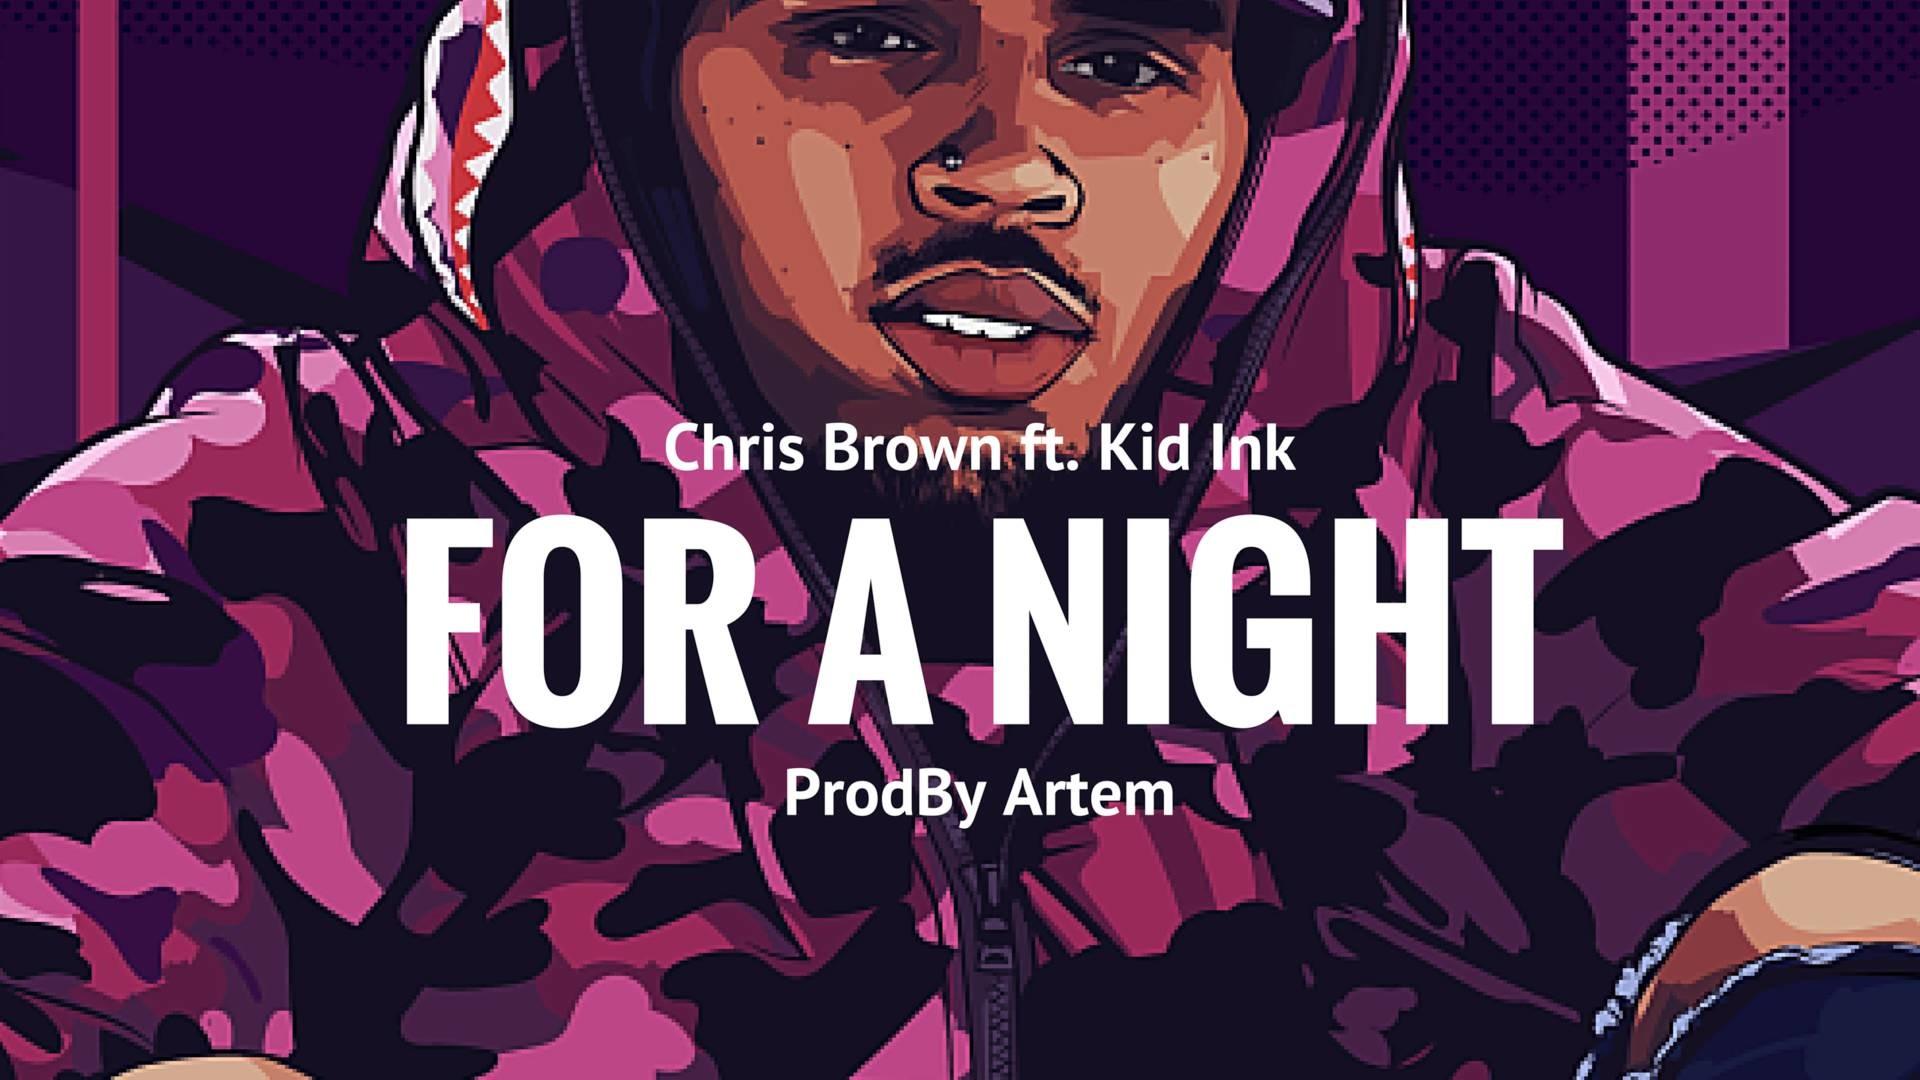 Chris Brown 2018 Wallpaper